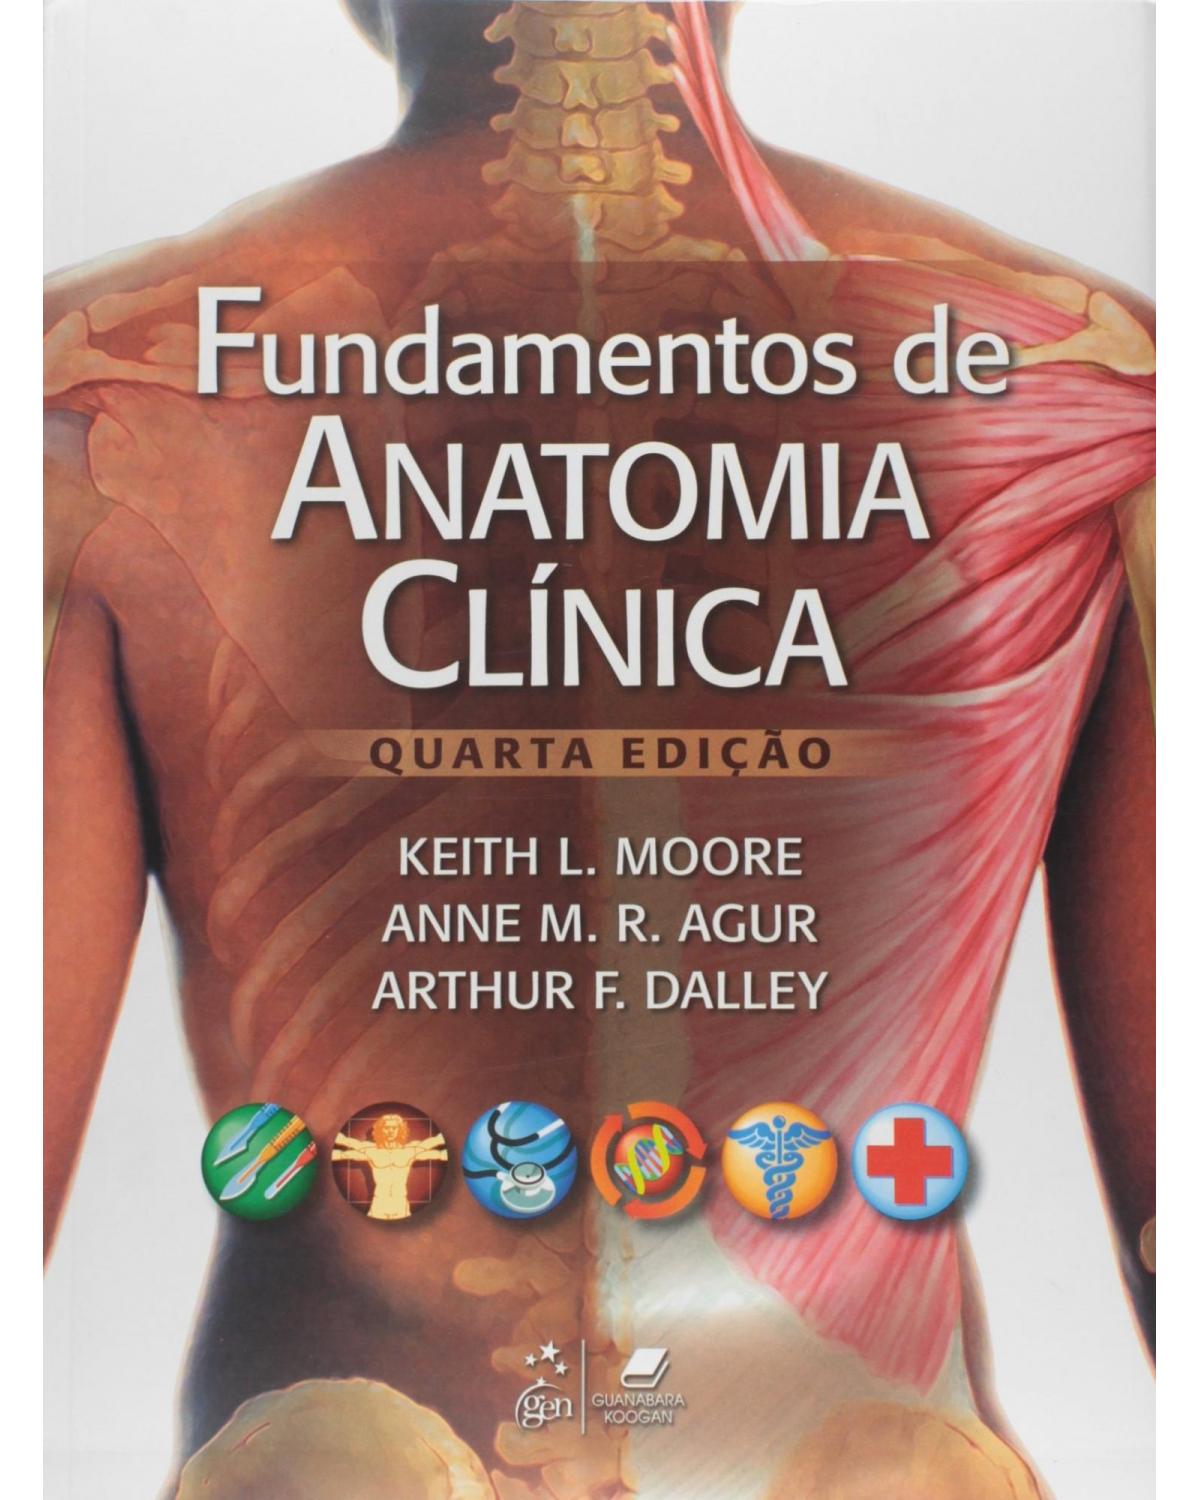 Fundamentos de anatomia clínica - 4ª Edição | 2013